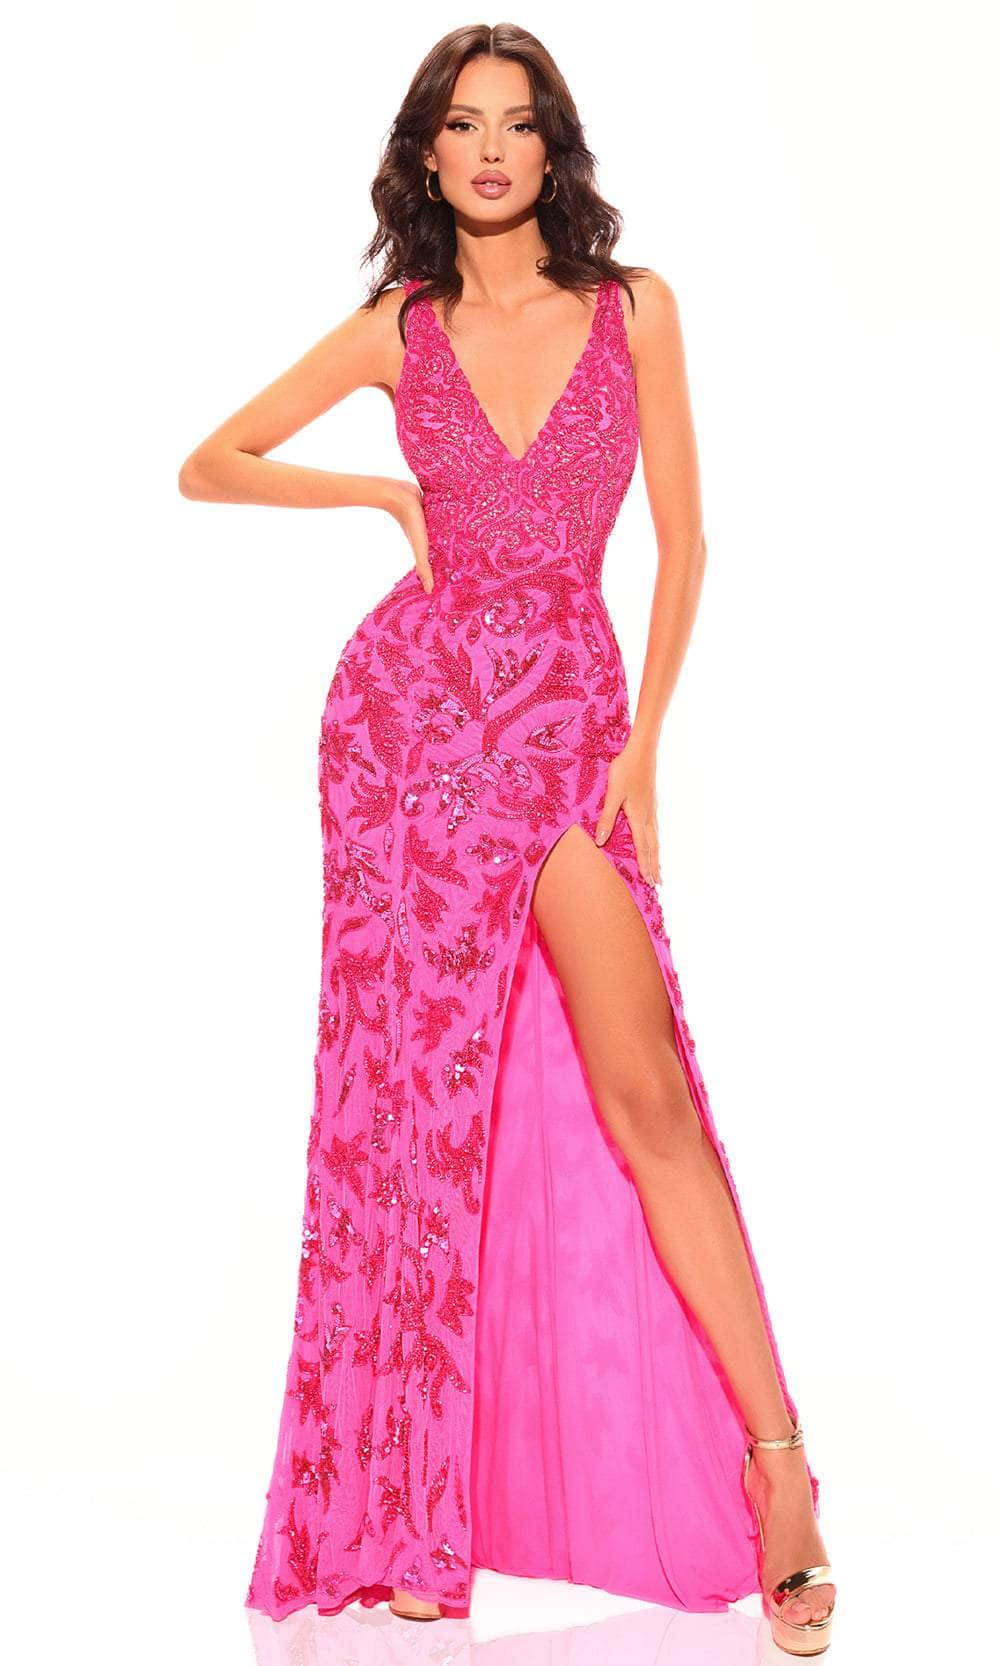 Amarra 94009 - High Slit Embellished Prom Dress 4 / Neon Pink